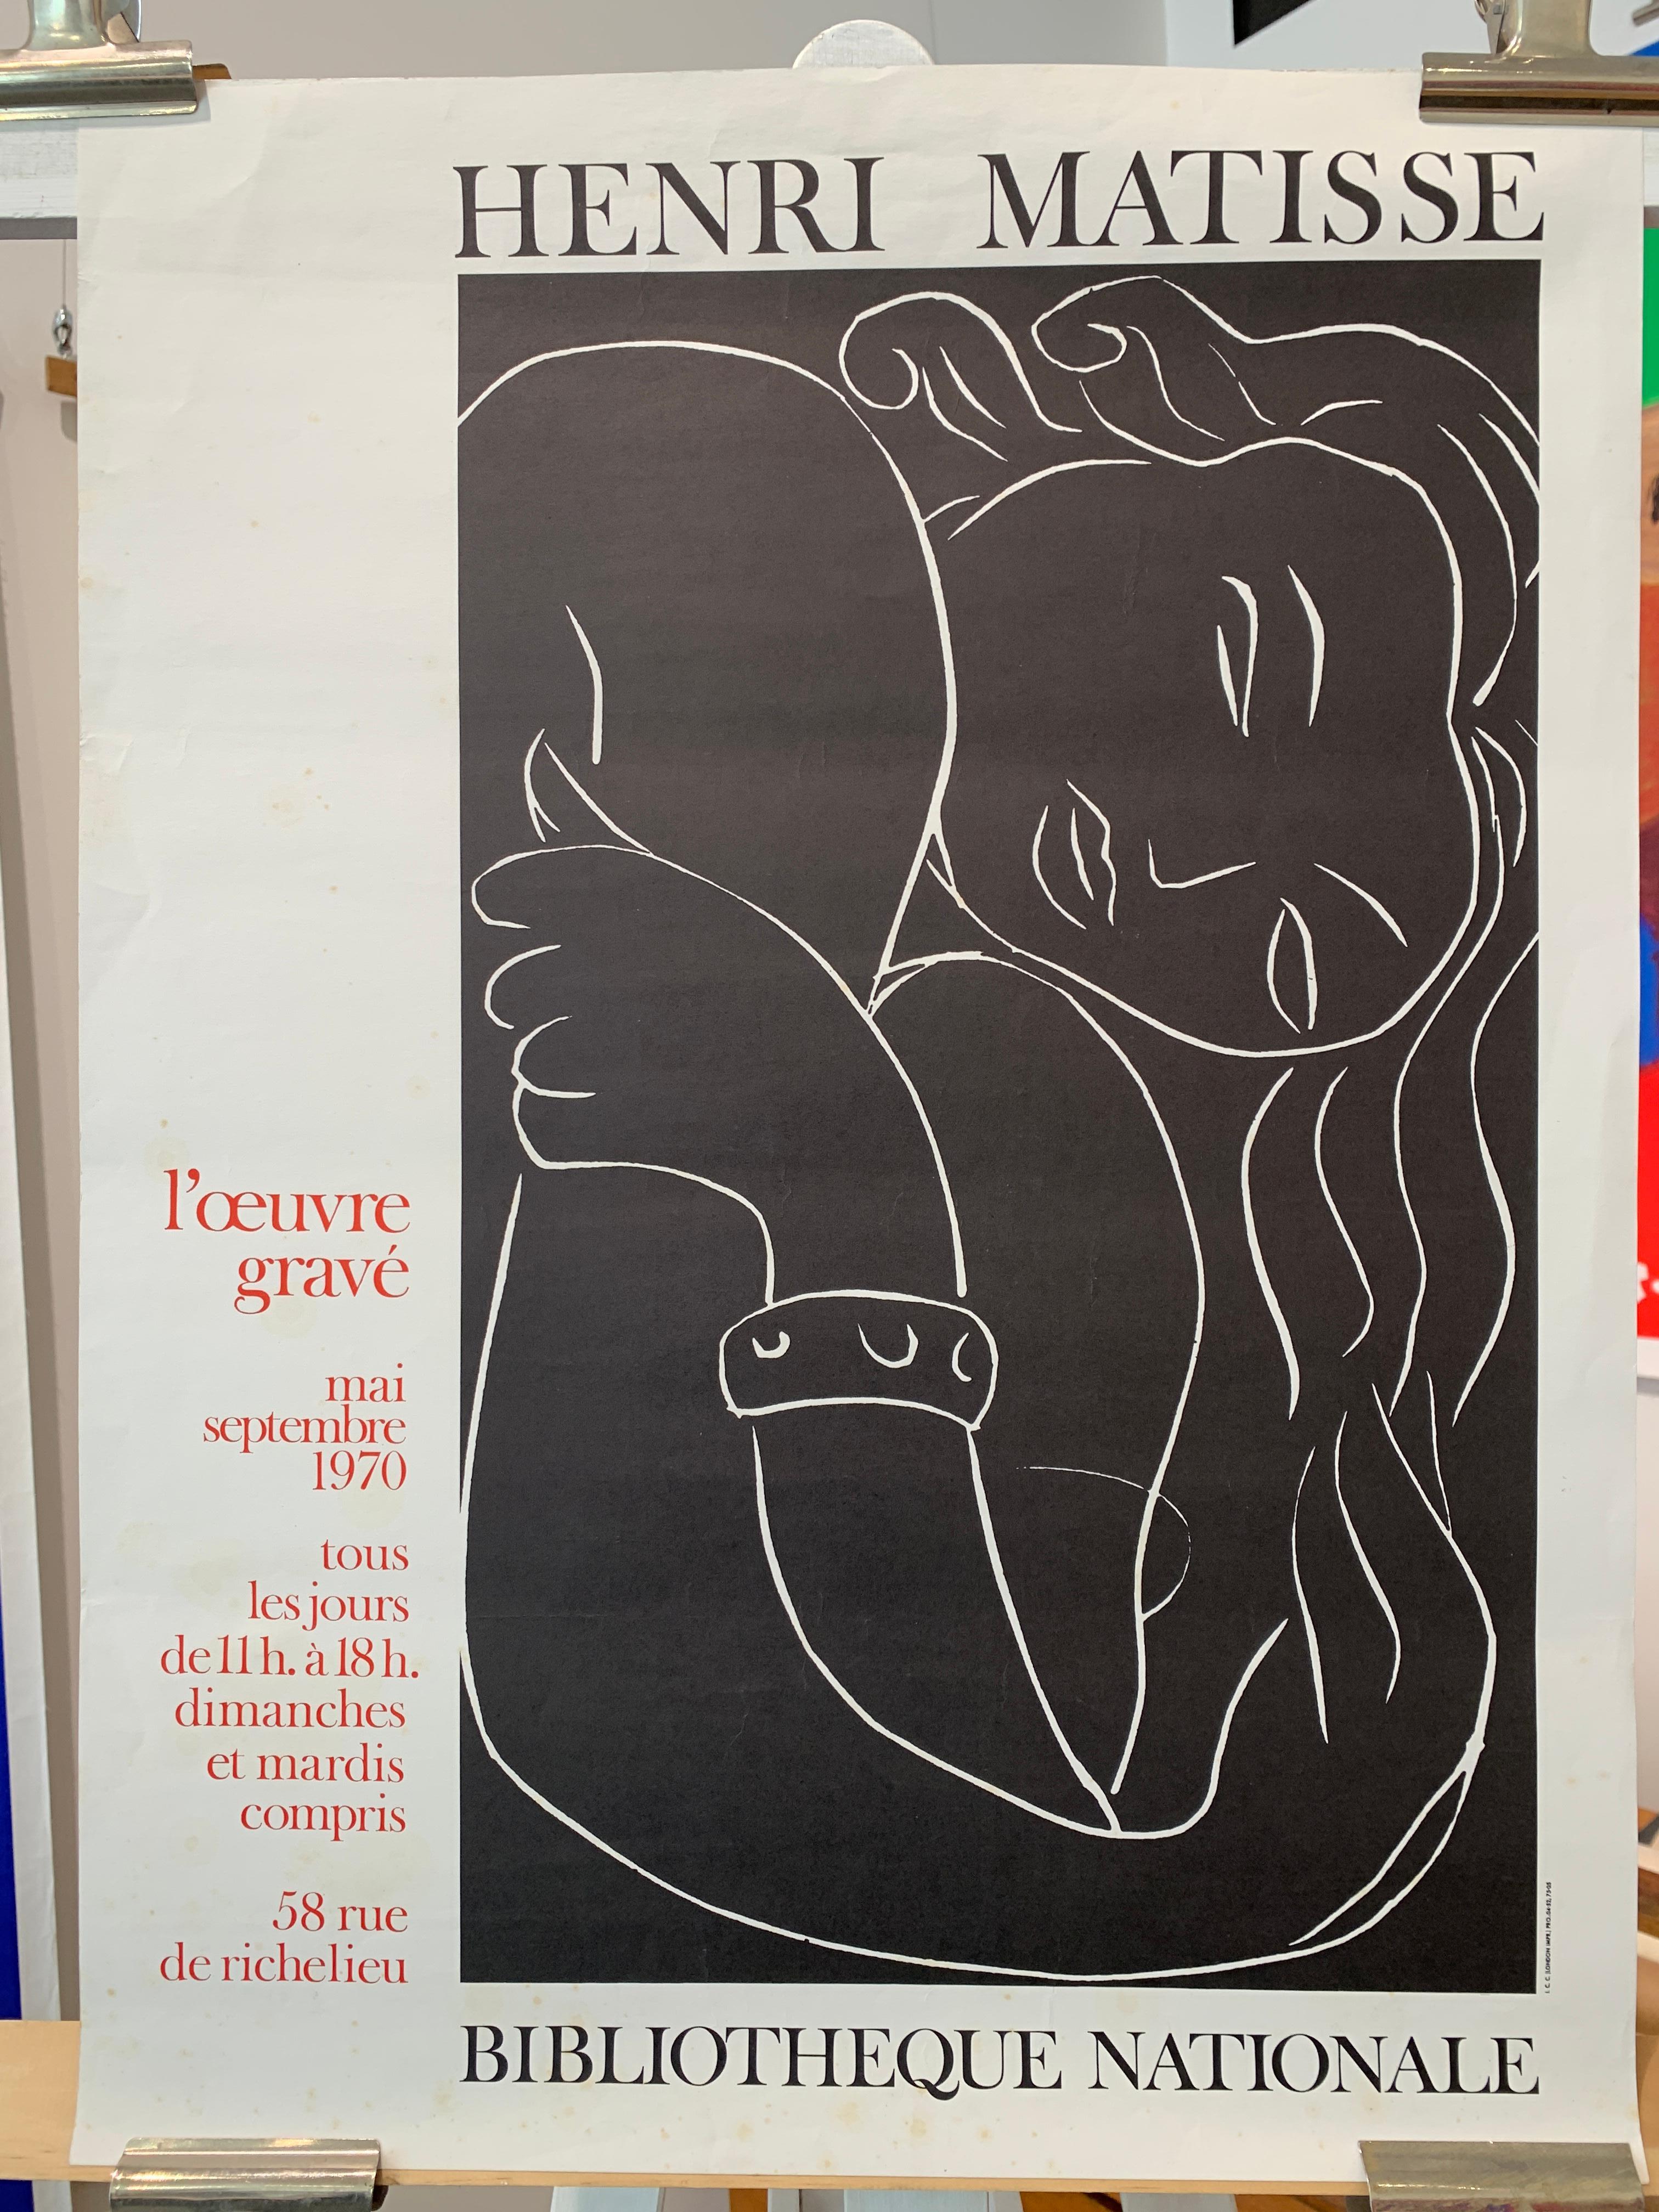 Affiche d'origine d'exposition vintage, Henri Matisse, « BIBLIOTHEQUE NATIONALE », 1970

Il s'agit d'une affiche d'exposition originale d'Henri Matisse datant de 1970. L'état général est très bon. Légers signes d'usure correspondant à l'âge de